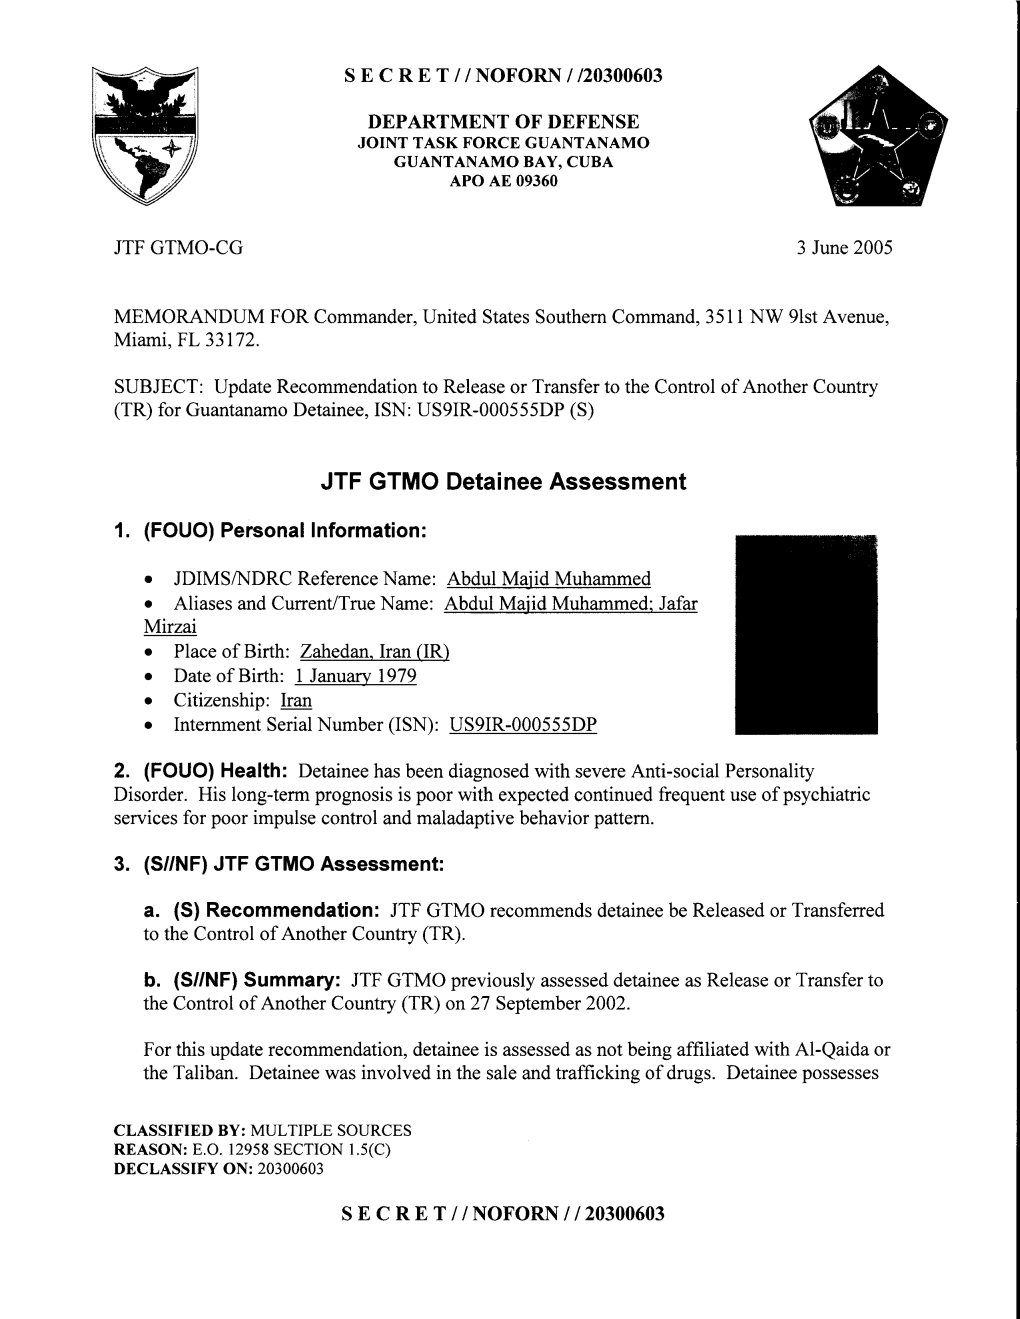 JTF GTMO Detainee Assessment